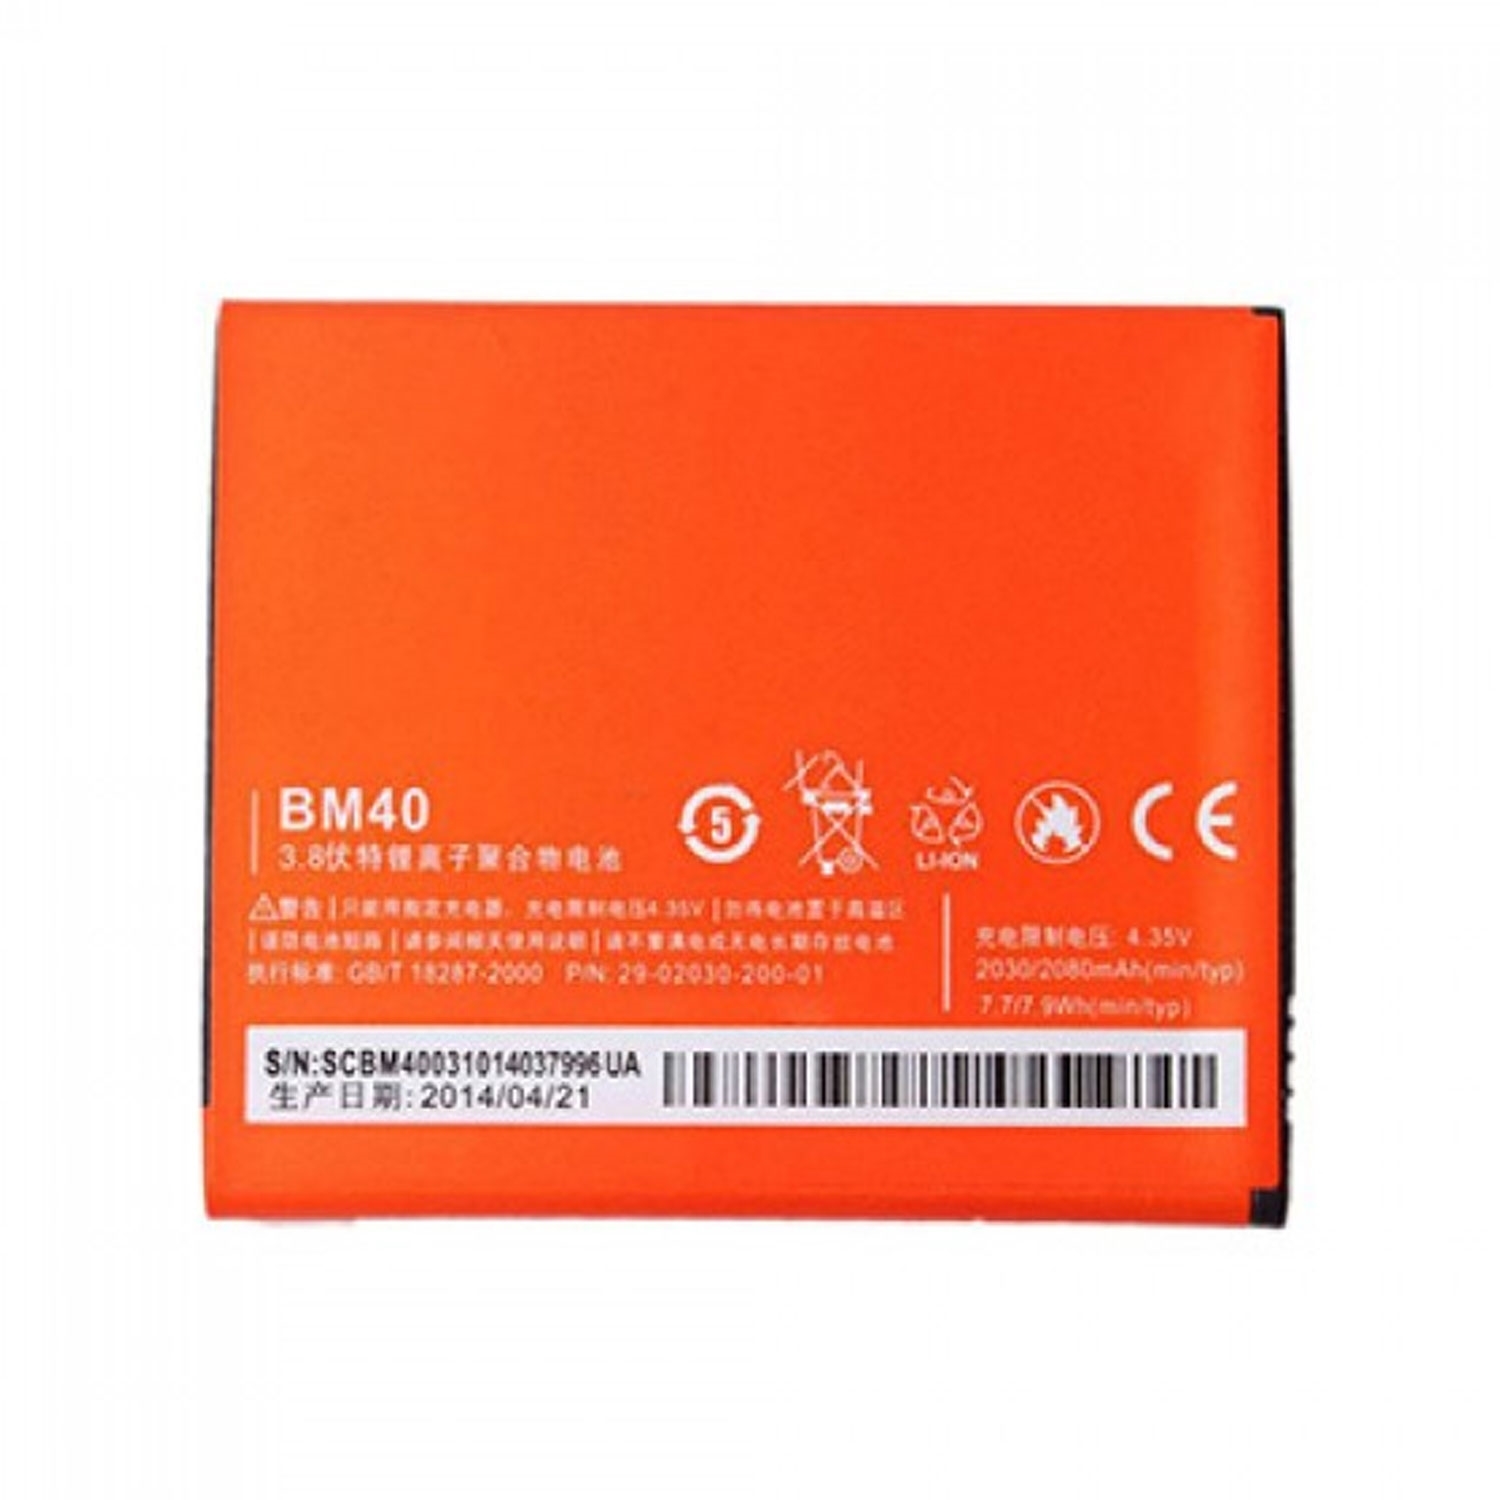 Ми аккумулятор купить. Аккумулятор для Xiaomi bm41. Аккумулятор BM-40. Аккумуляторная батарея для Xiaomi bm44 (Redmi 2). Аккумулятор для Xiaomi mi2a / mi2 / m2a / 2a bm40.